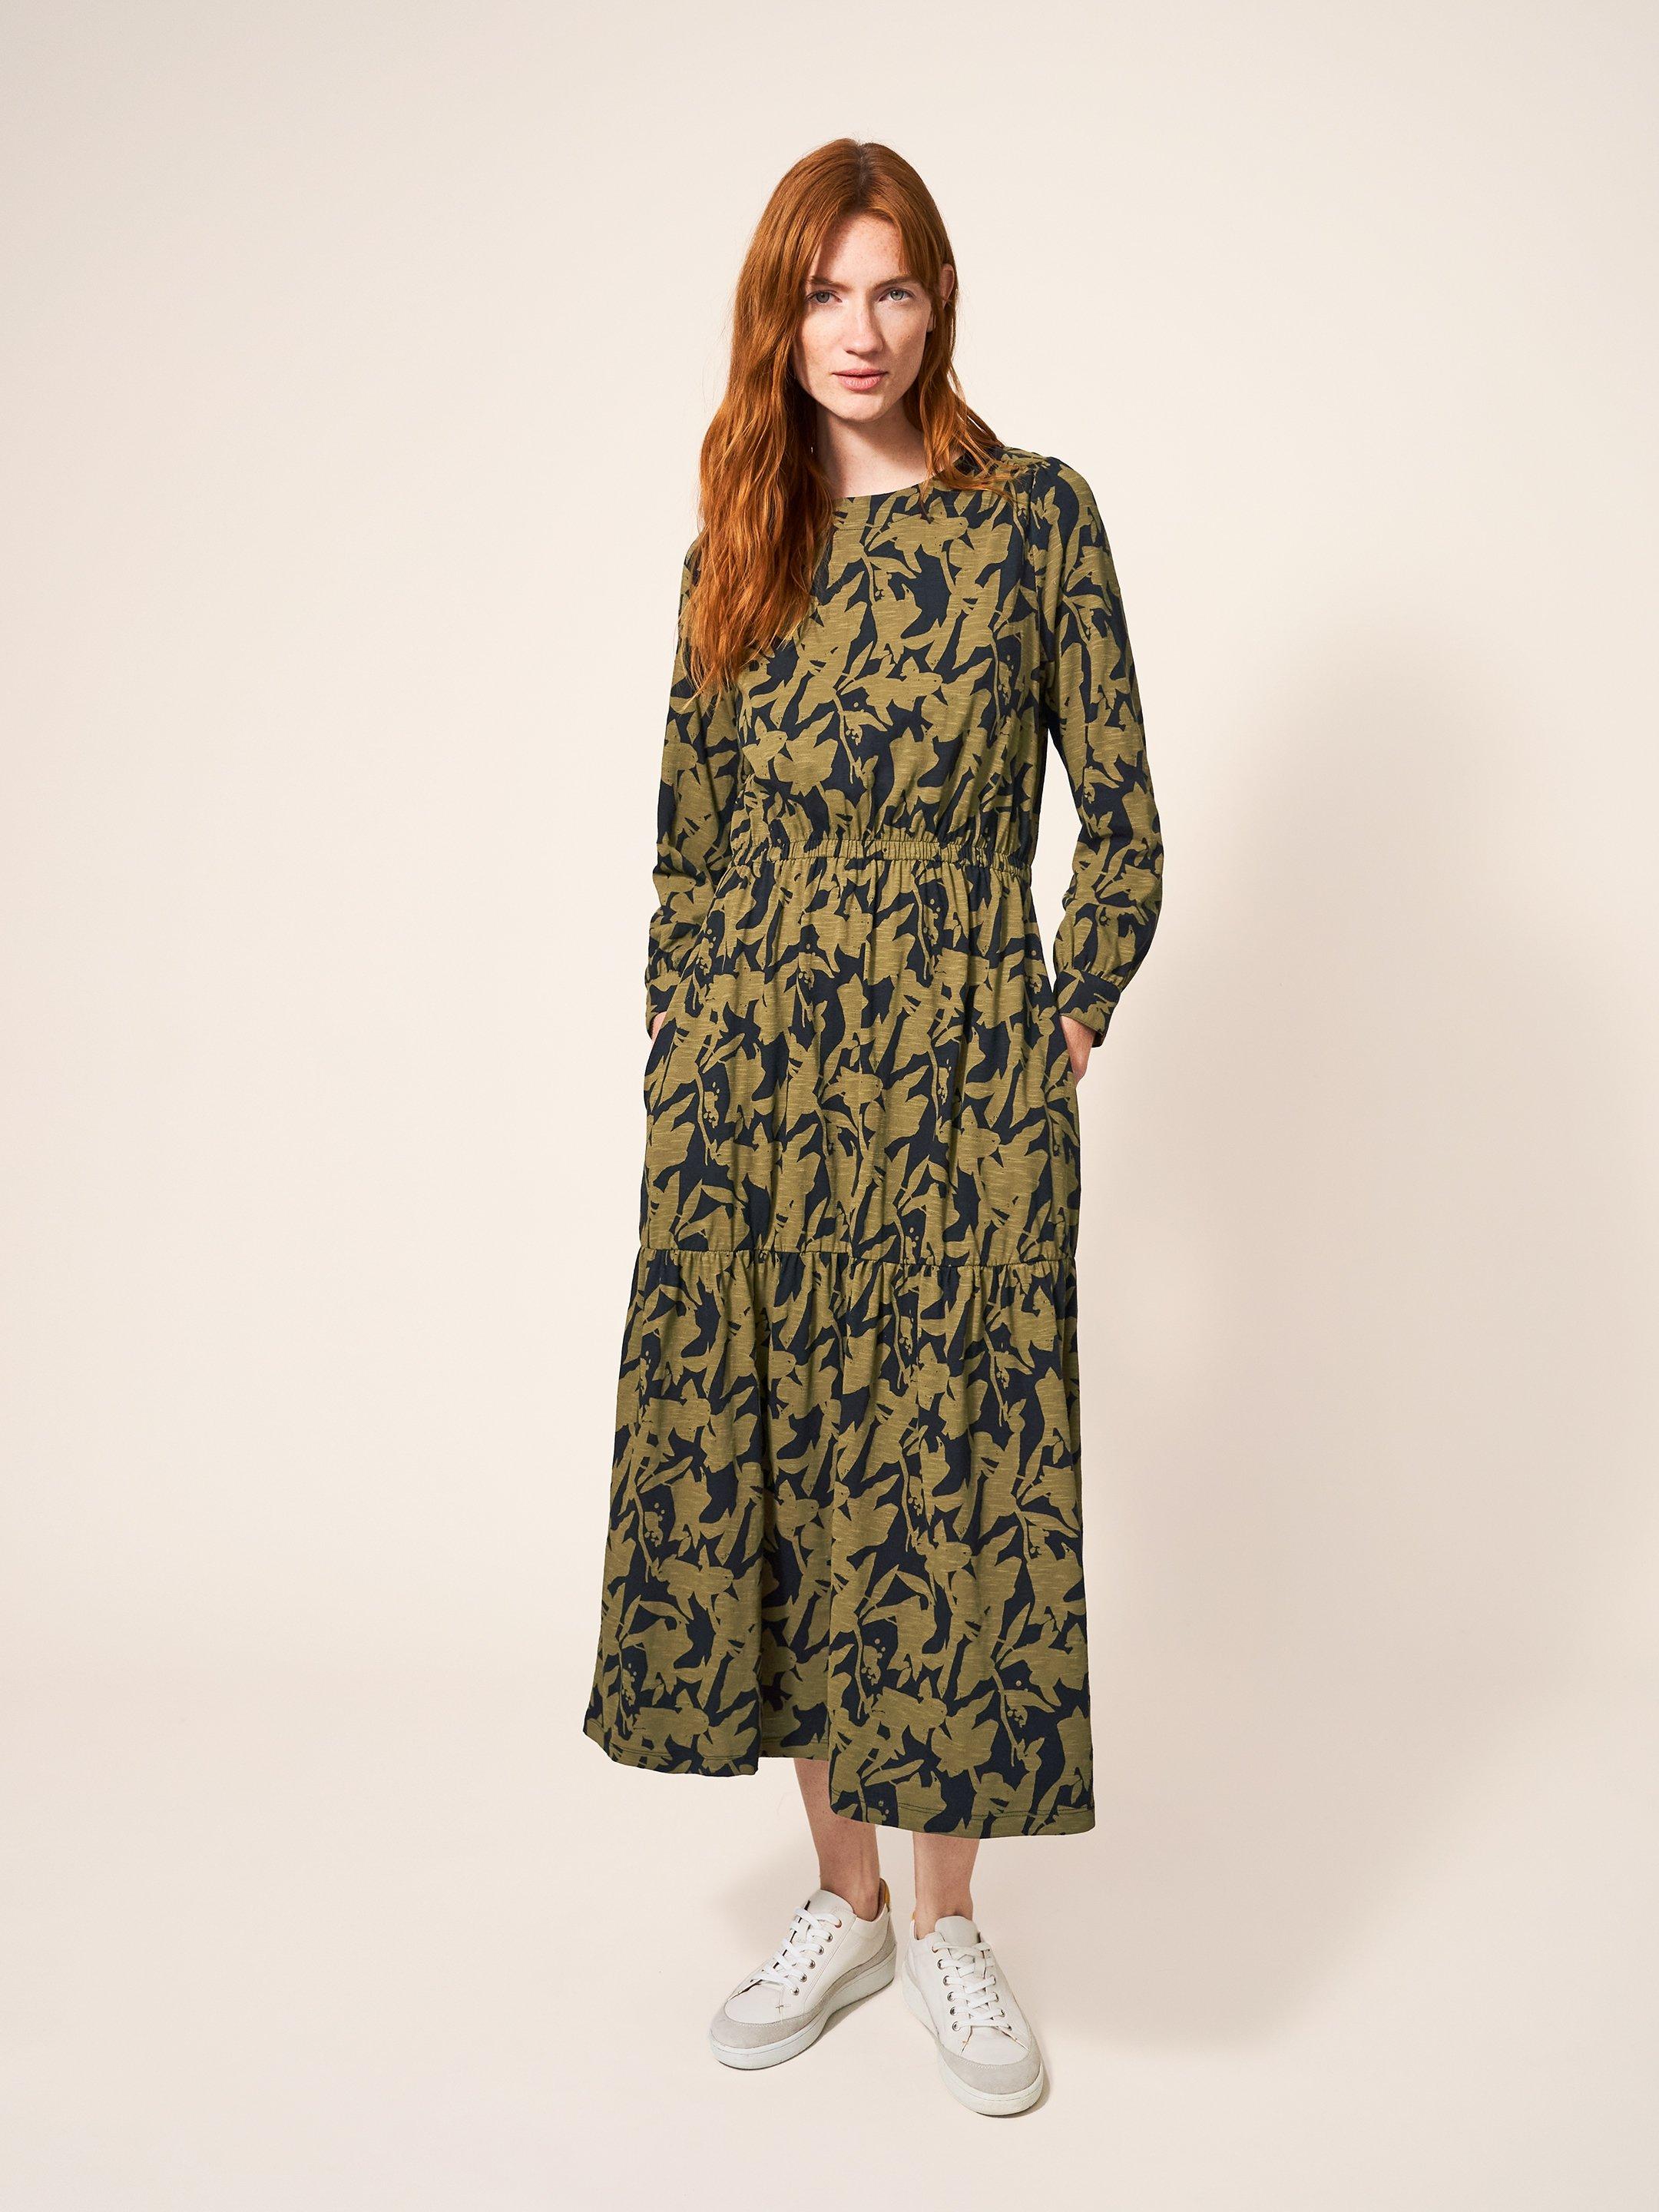 Olive Jersey Dress in BLK MLT - MODEL FRONT